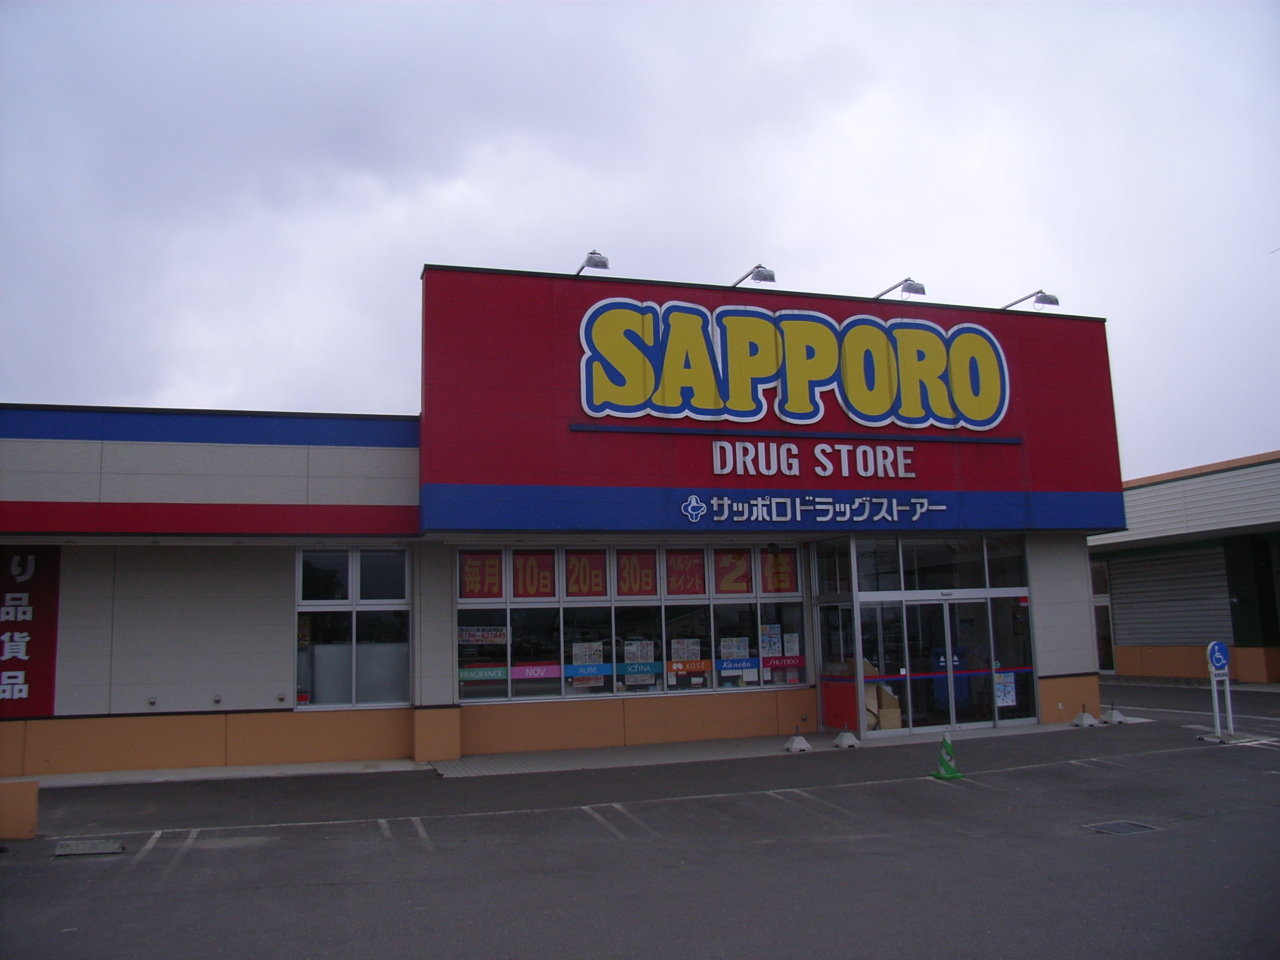 Dorakkusutoa. Sapporo drugstores Nanae shop 319m until (drugstore)